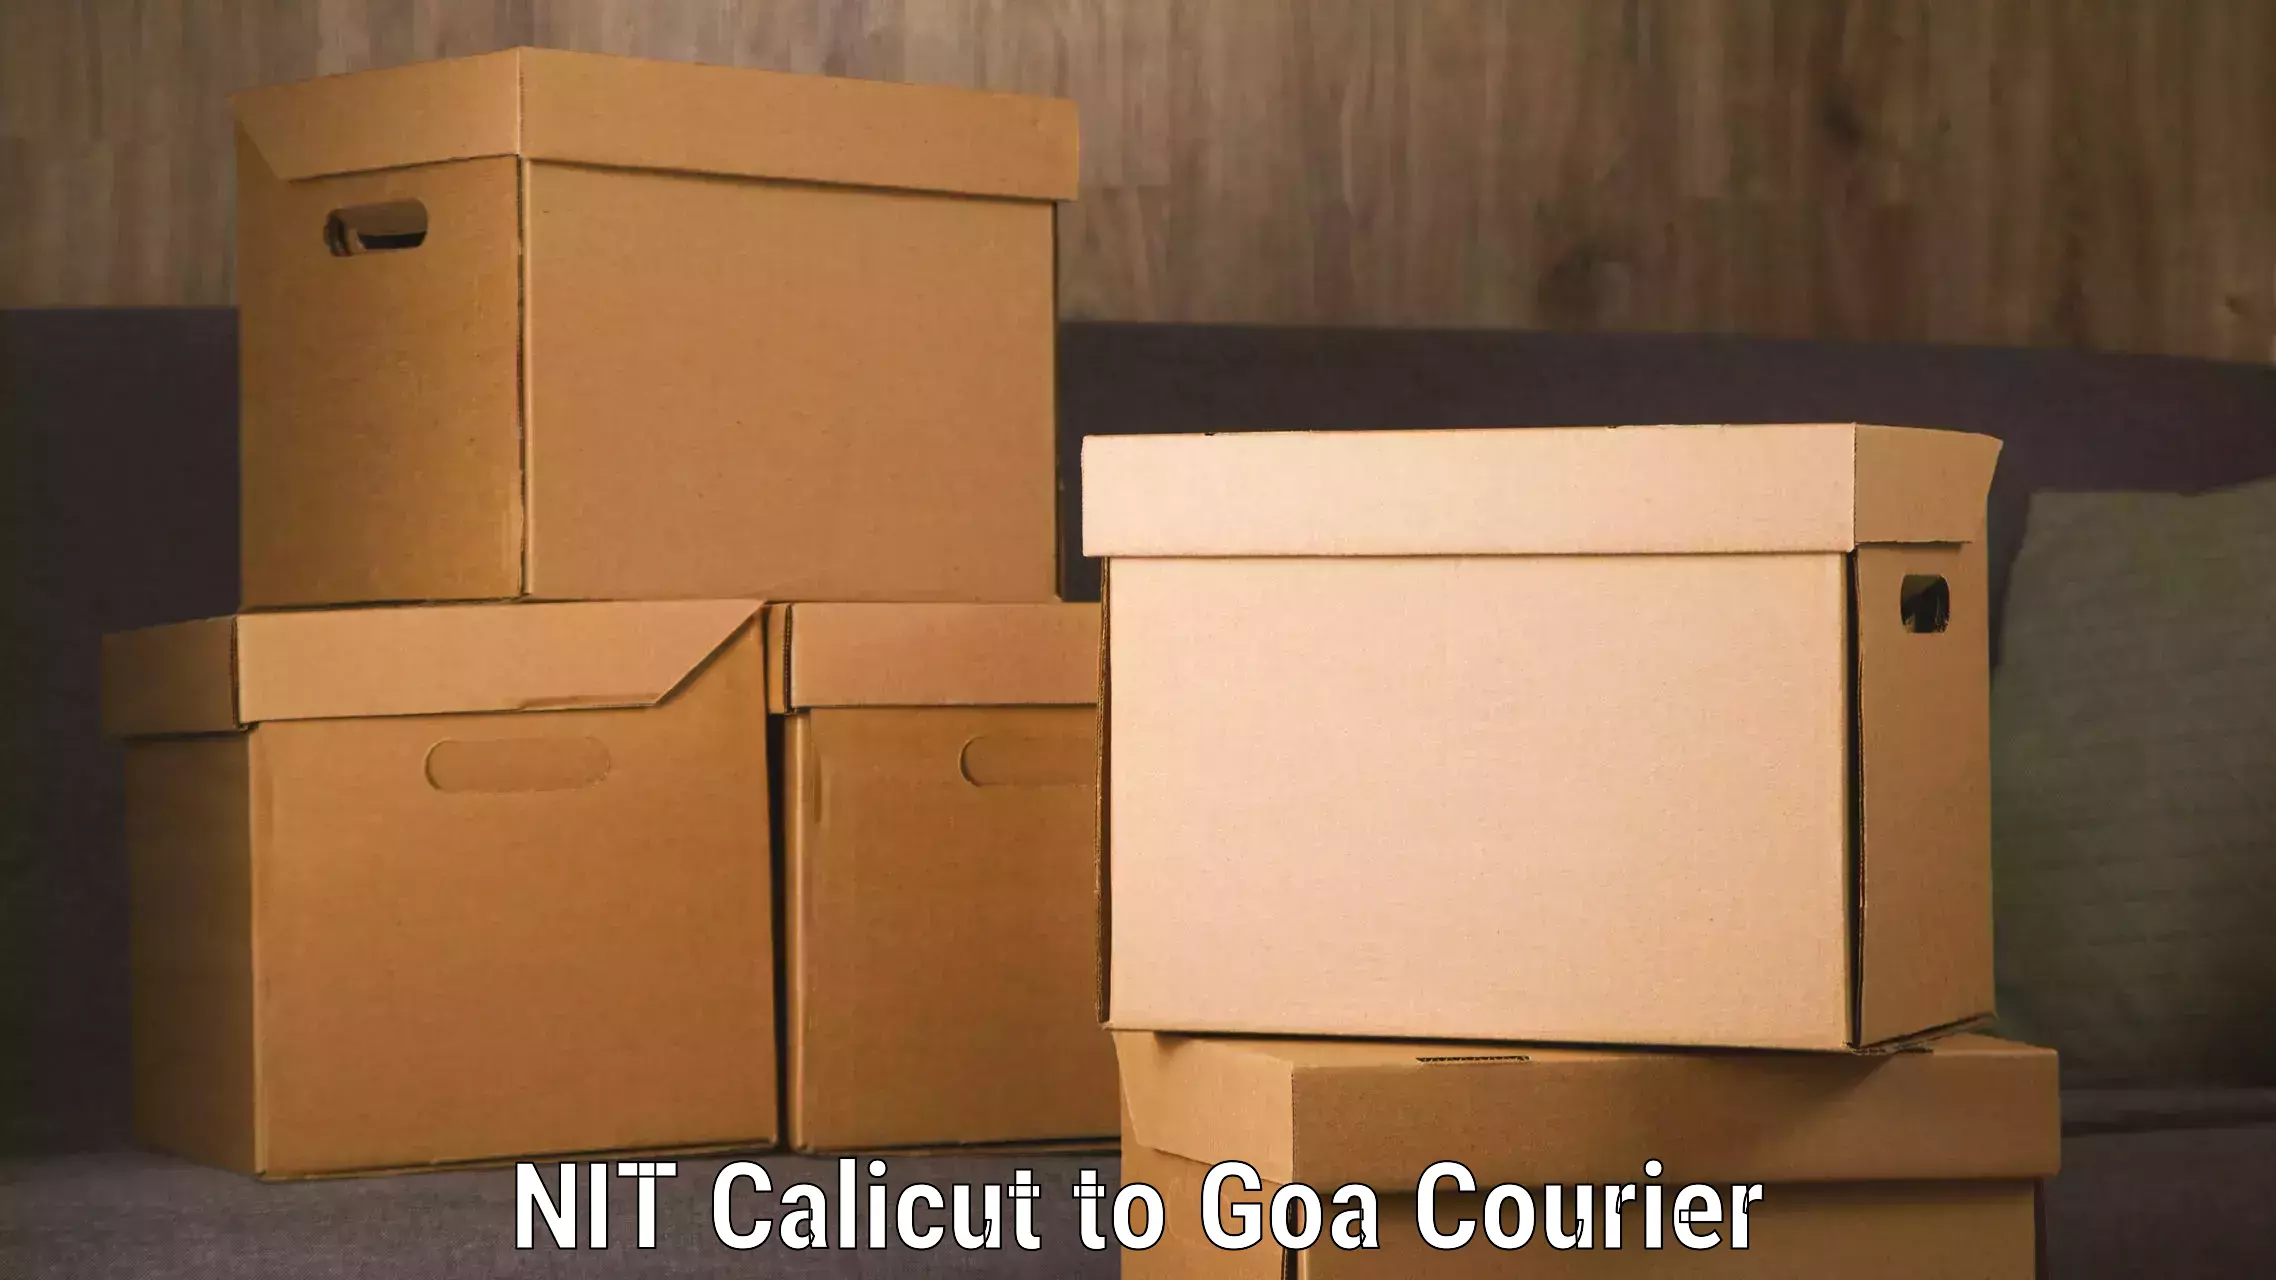 Courier service comparison NIT Calicut to South Goa